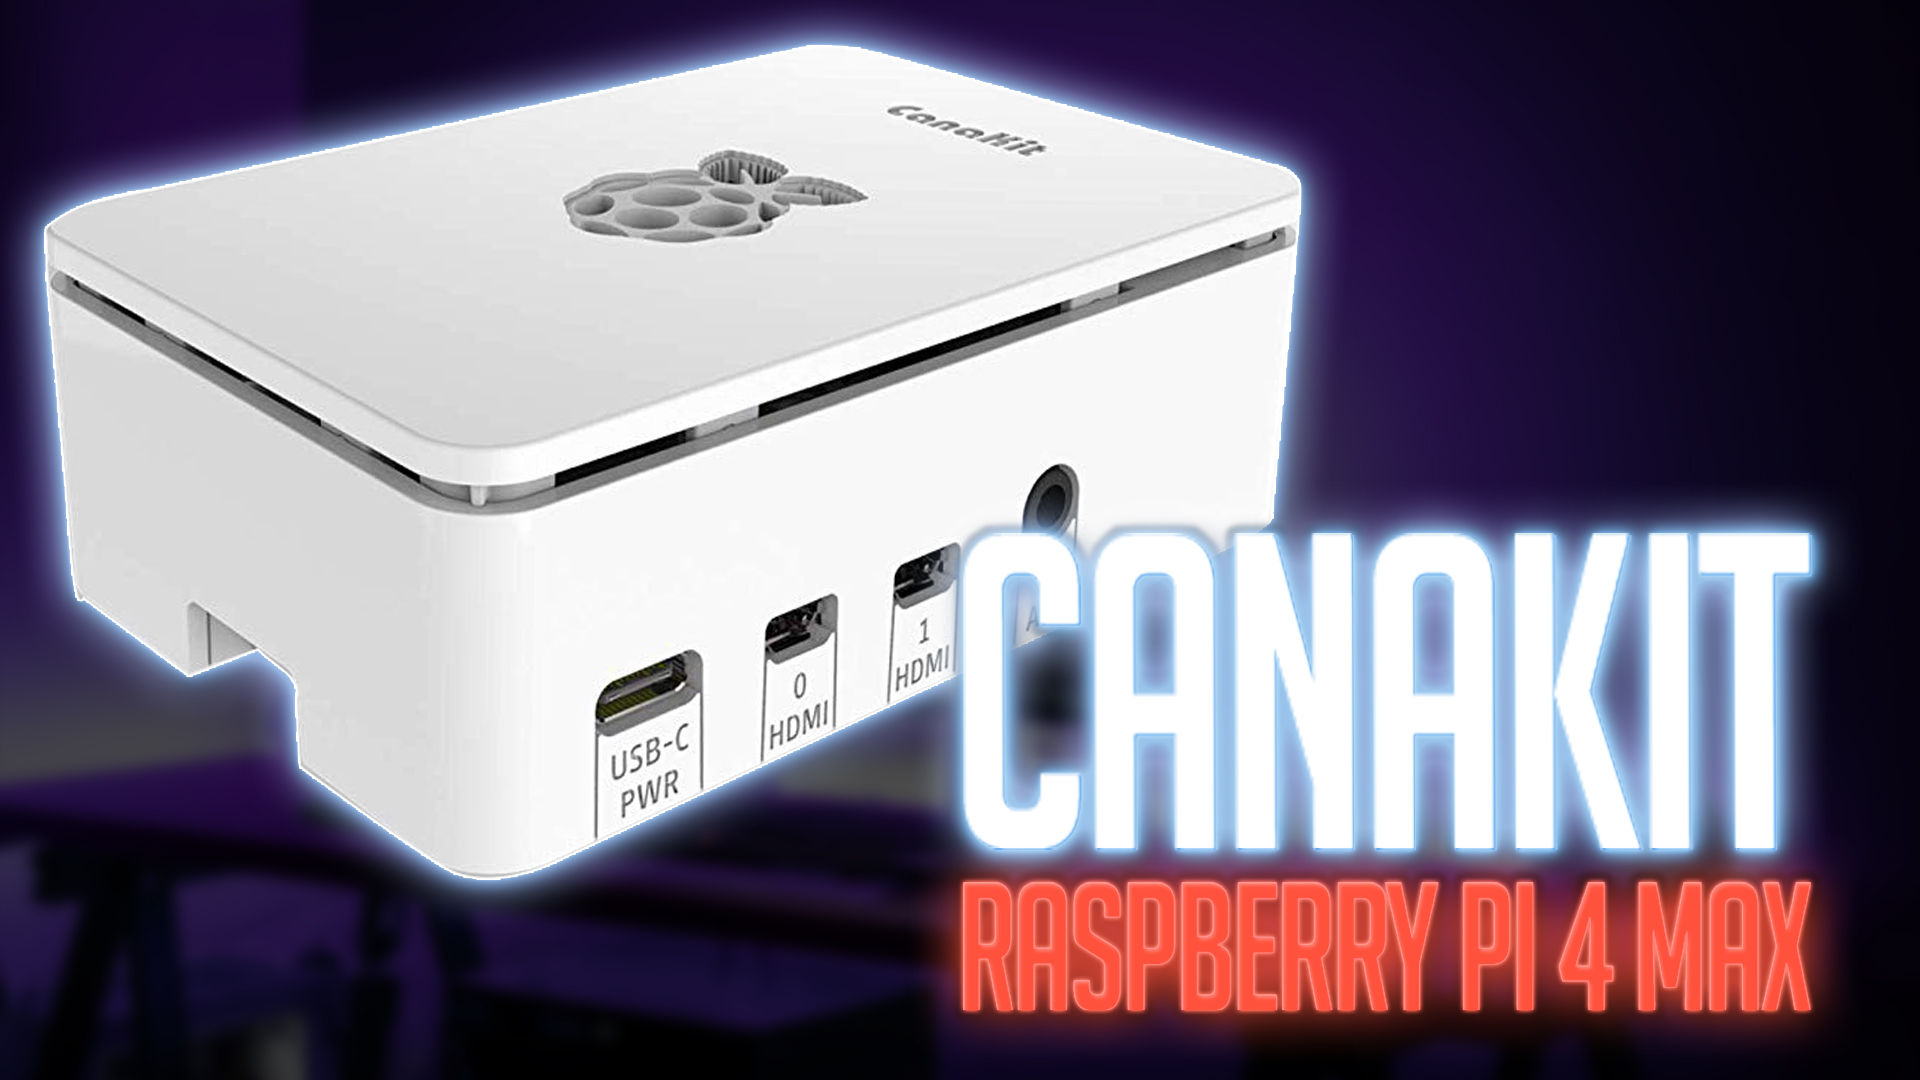 Canakit Raspberry Pi 4 Max